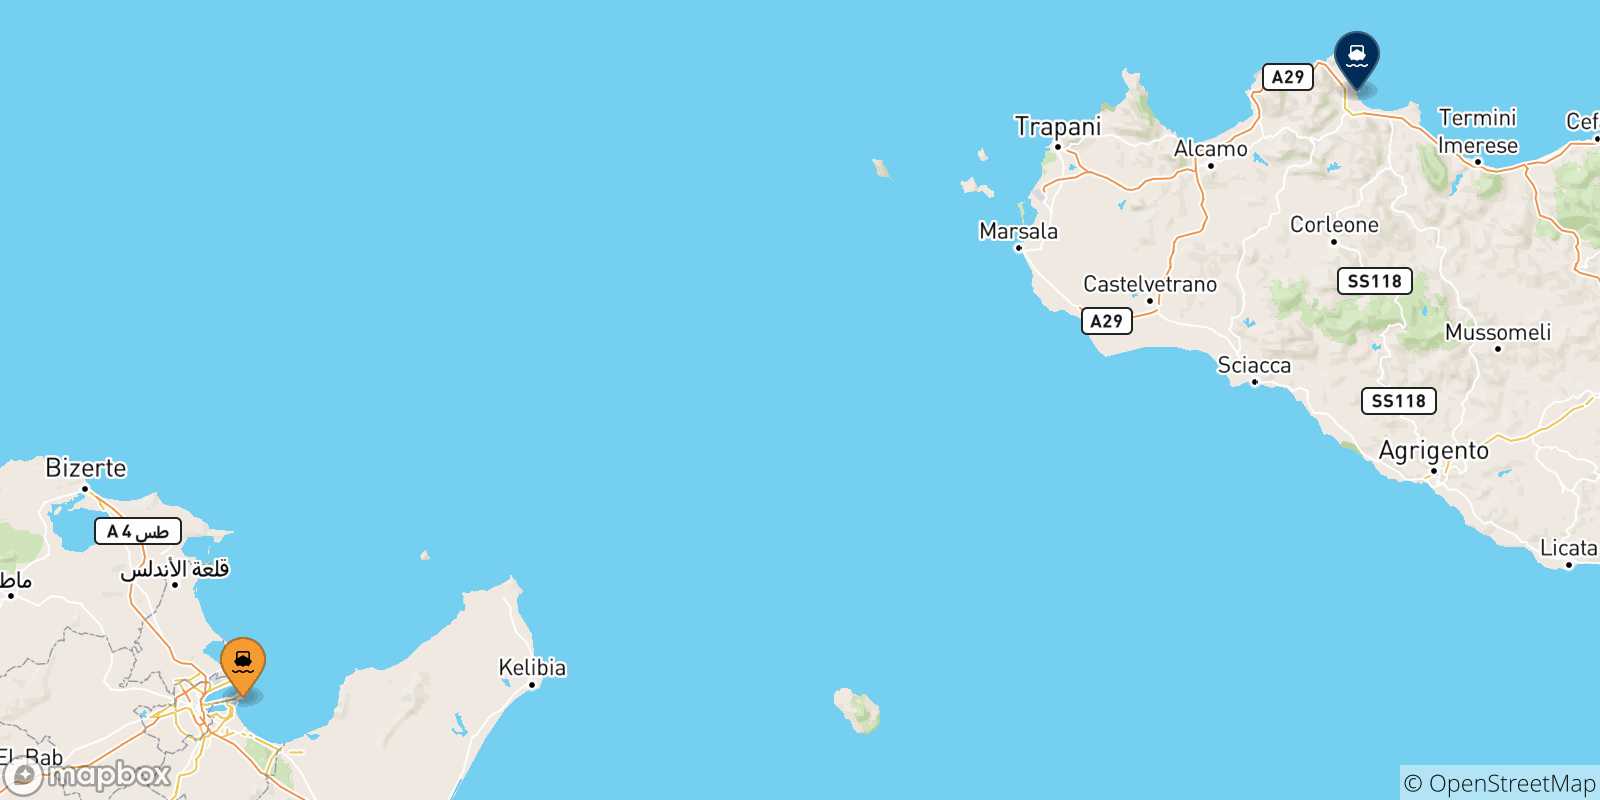 Mappa delle possibili rotte tra Tunisi e la Sicilia